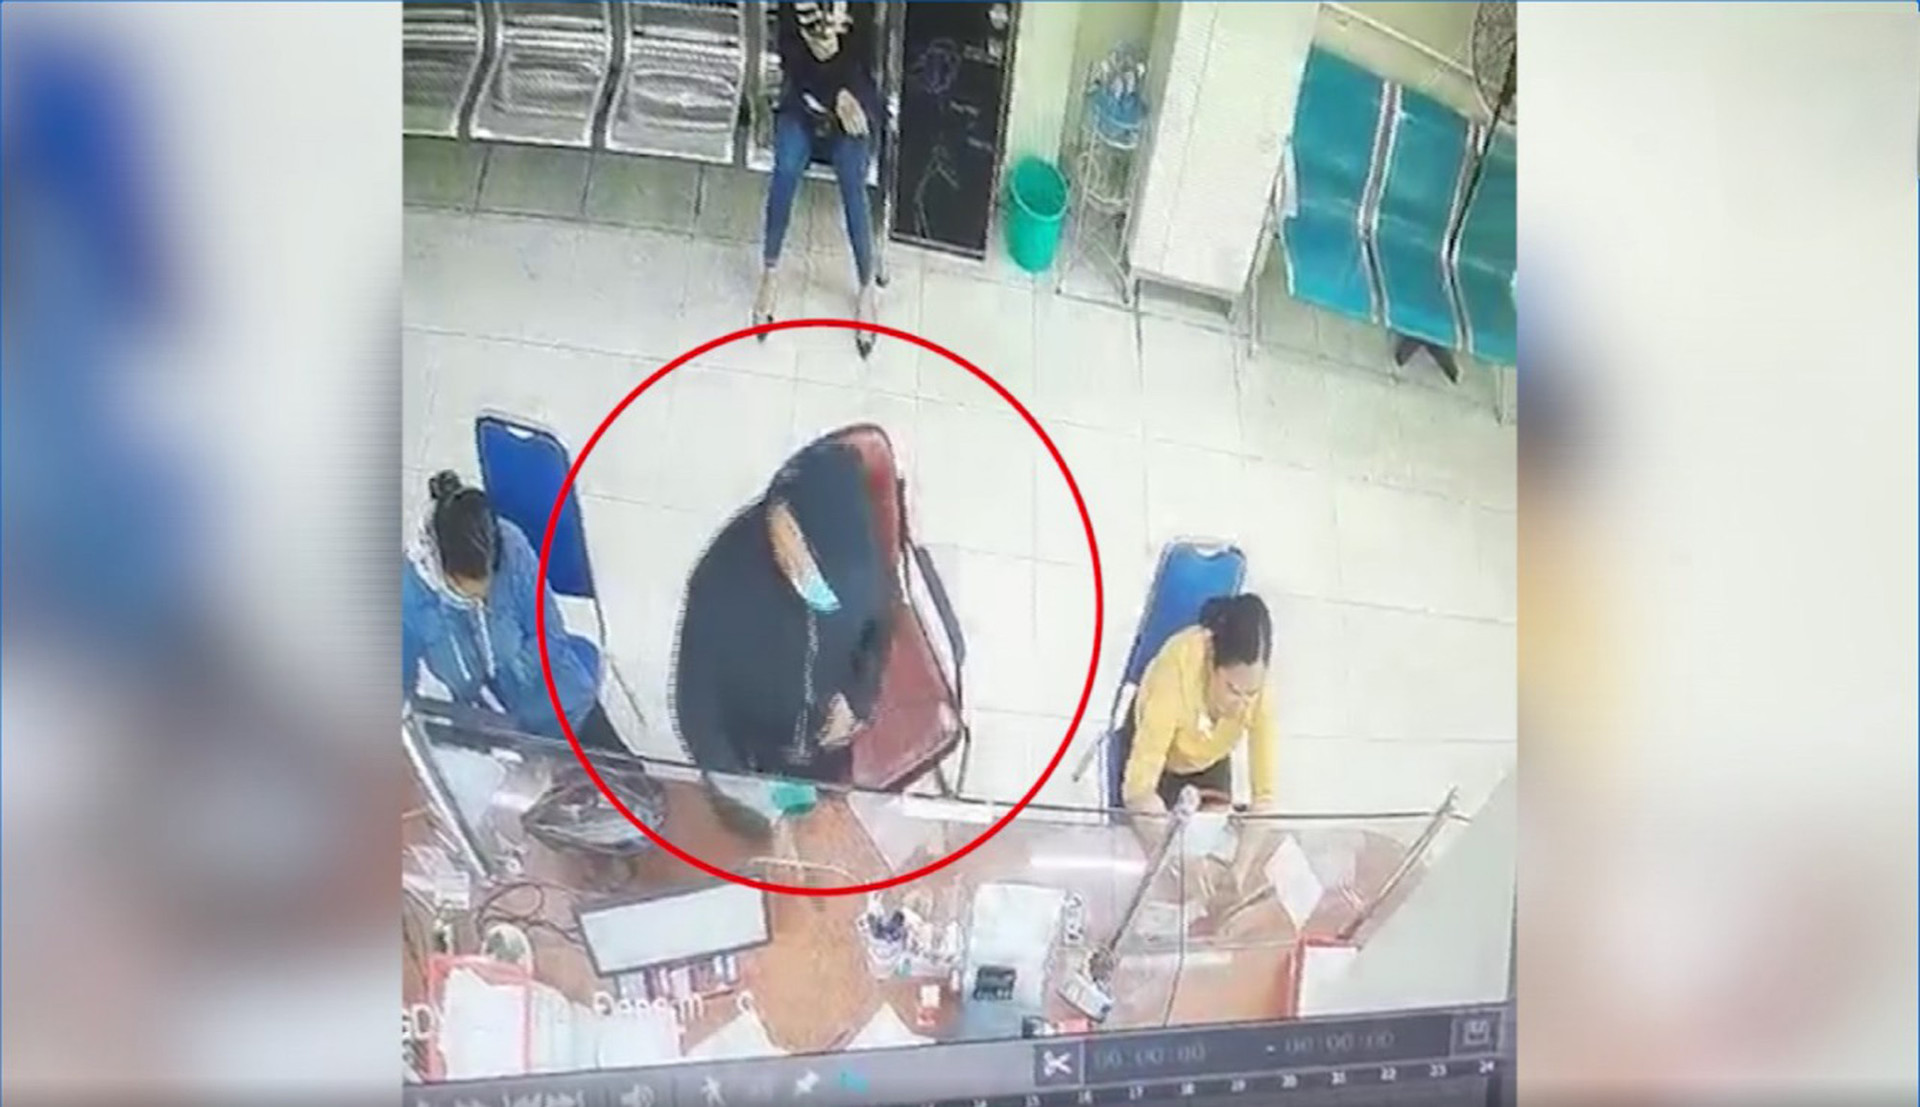 Truy bắt kẻ dùng súng nhựa cướp tiền của khách tại ngân hàng ở Đồng Nai - 1